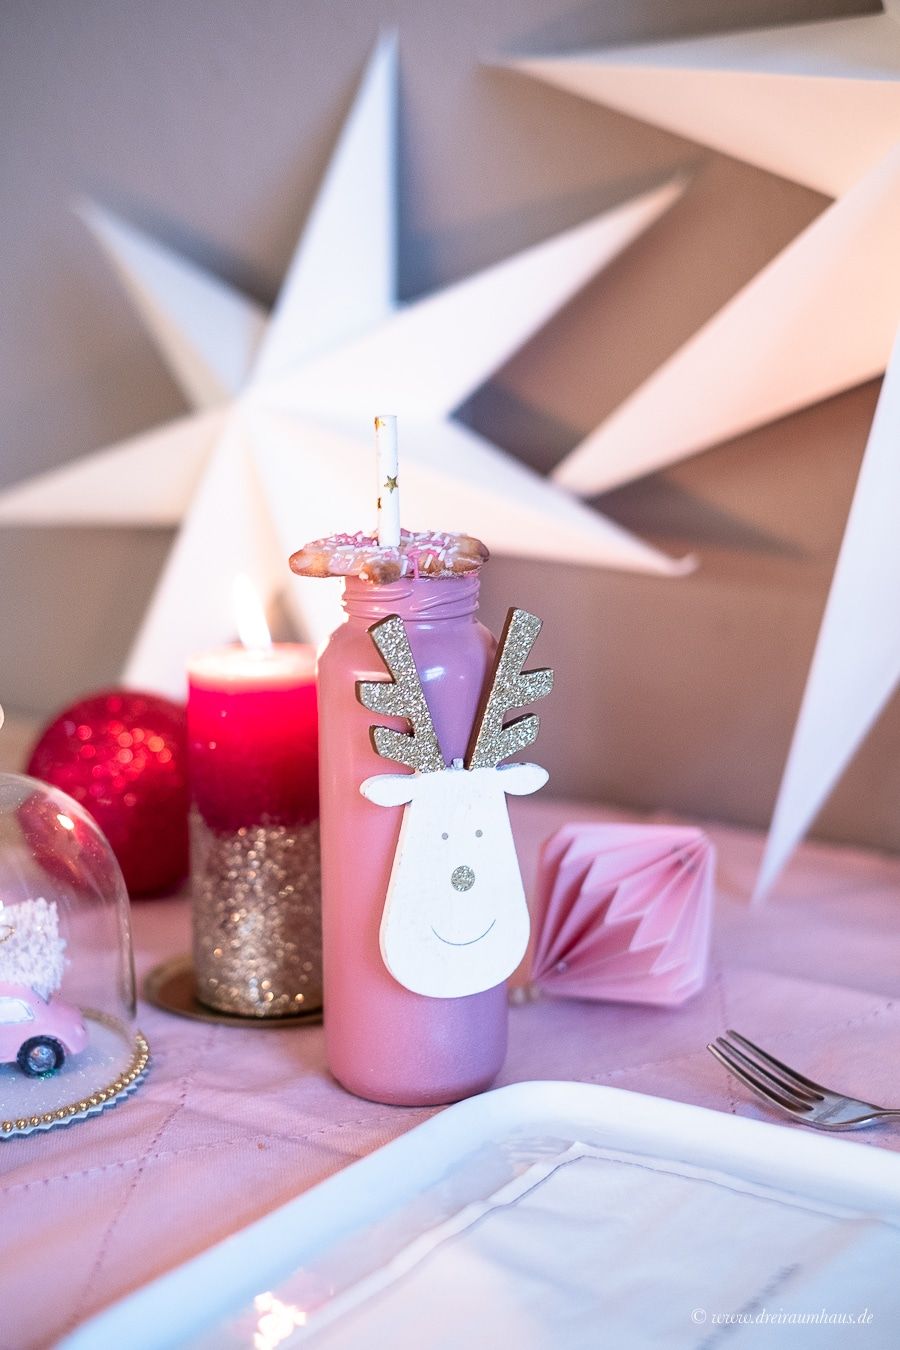 Bezaubernde Tischdeko, ein DIY fÃ¼r die Weihnachtstafel und Kaffeegenuss fÃ¼r den stimmungsvollen Moment! Kaffeegenuss mit EILLES Kaffee von J.J. Darboven!